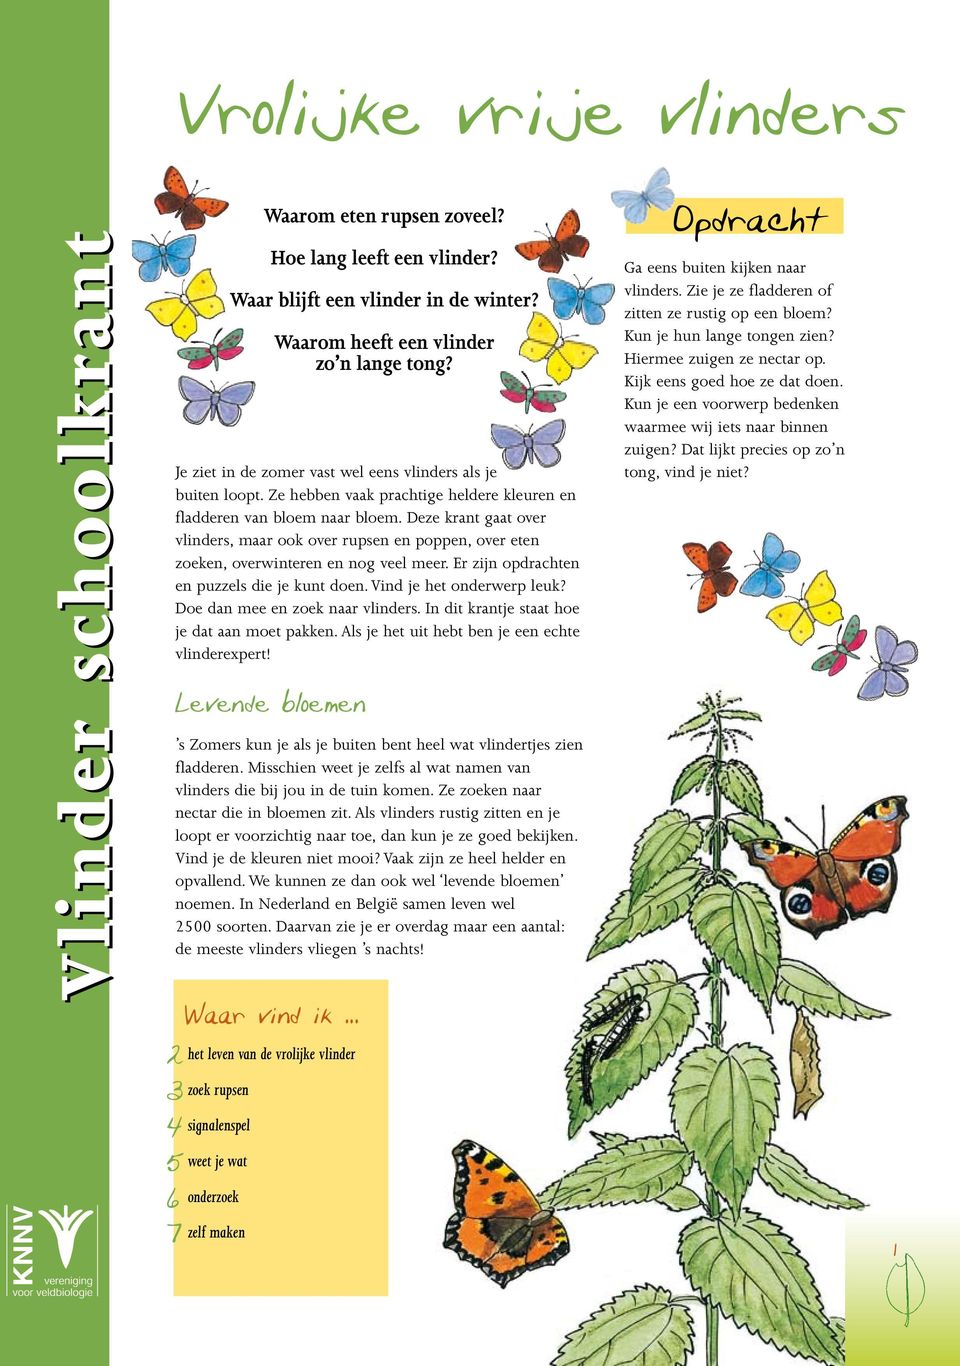 Doe dan mee en zoek naar vlinders. In dit krantje staat hoe je dat aan moet pakken. Als je het uit hebt ben je een echte vlinderexpert!